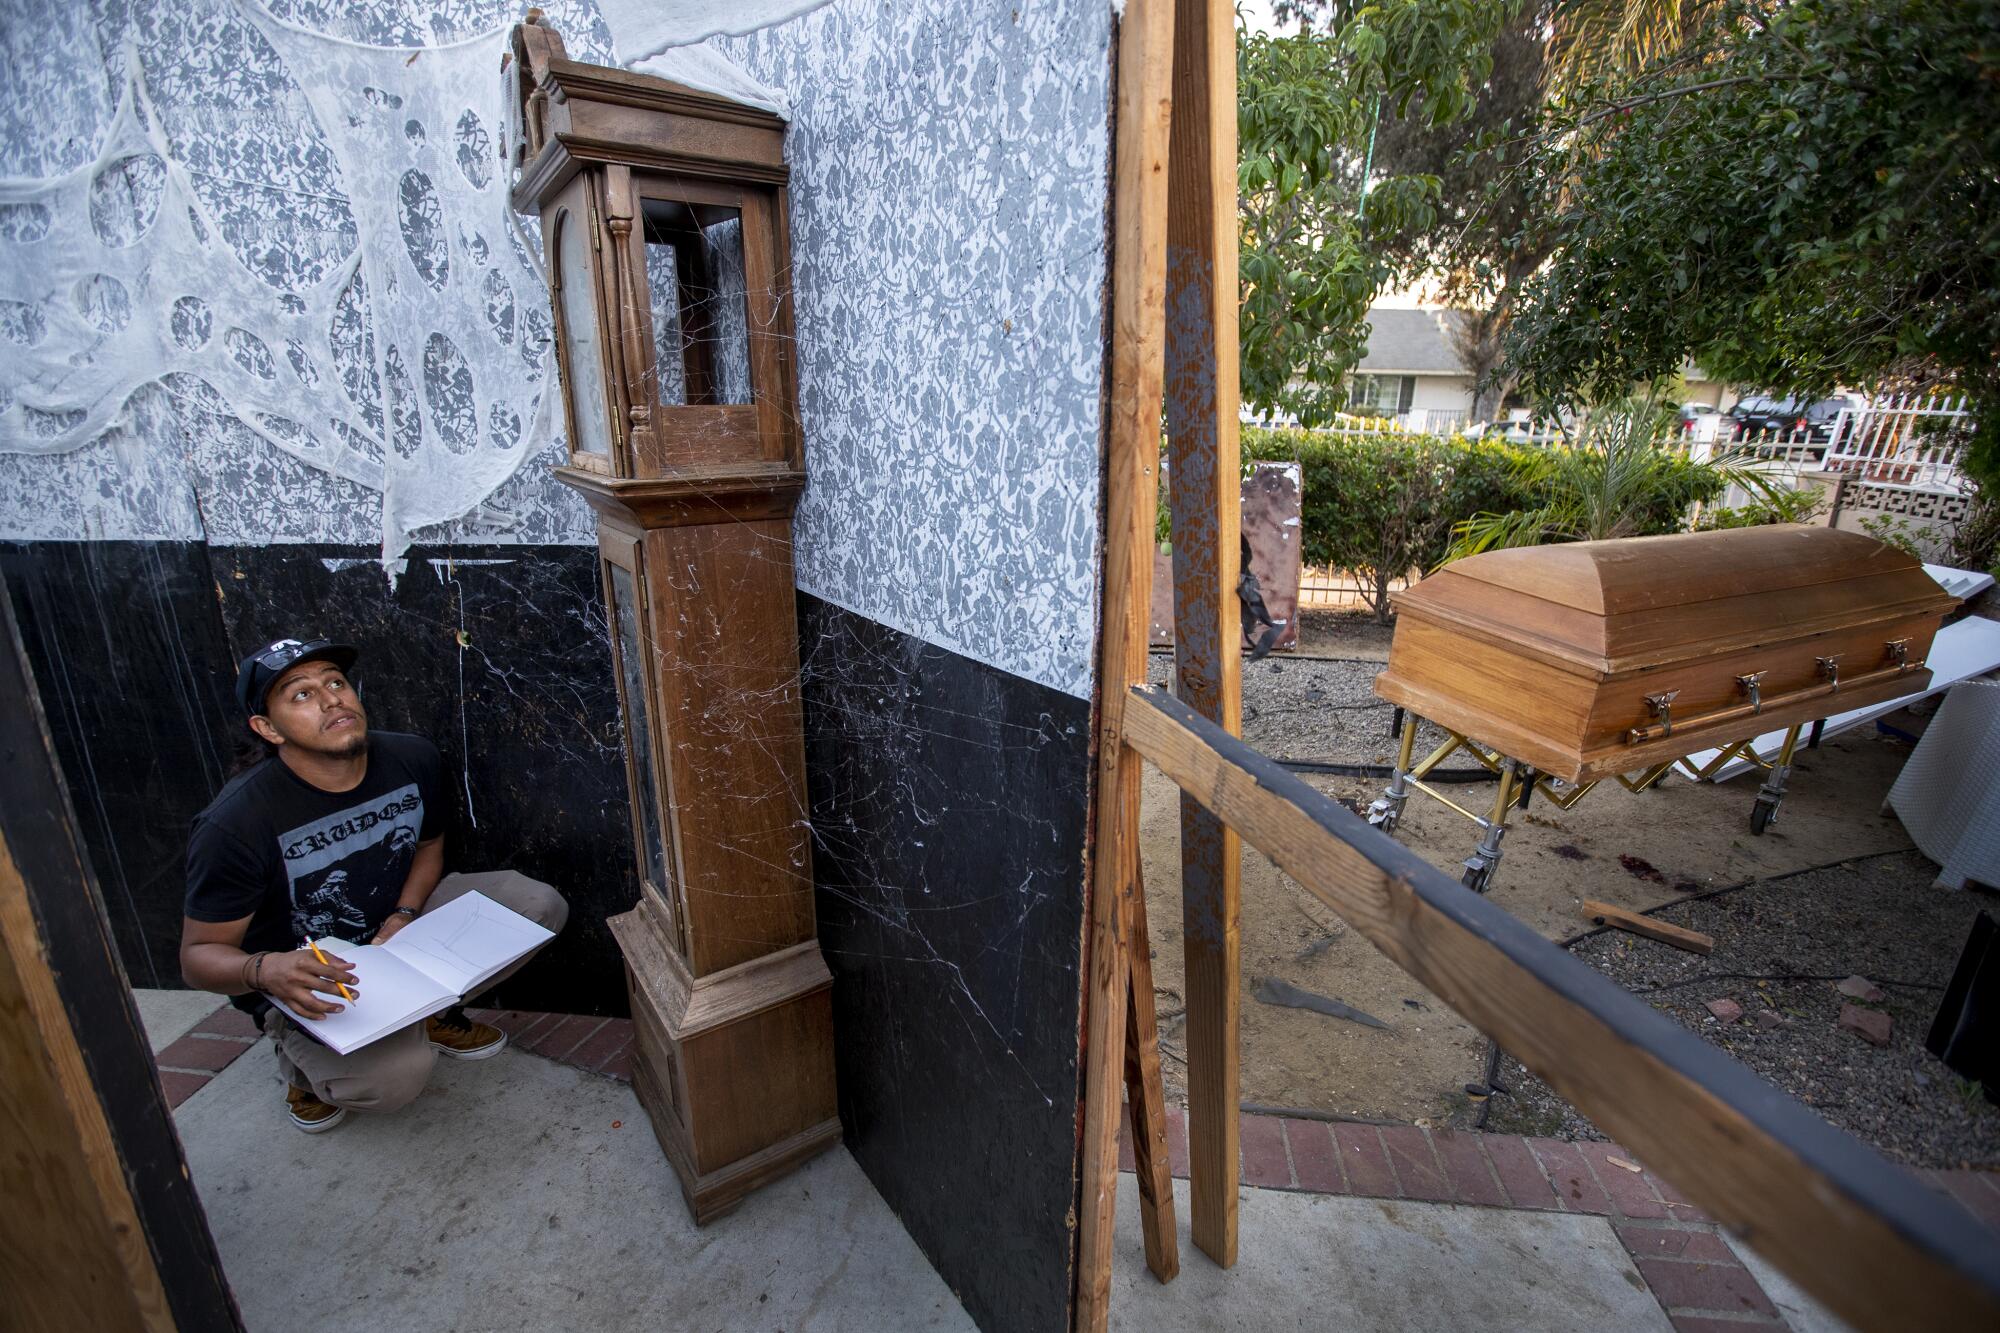 Eduardo Camarena, artist and set designer, draws up set plans for Santa Ana Haunt.